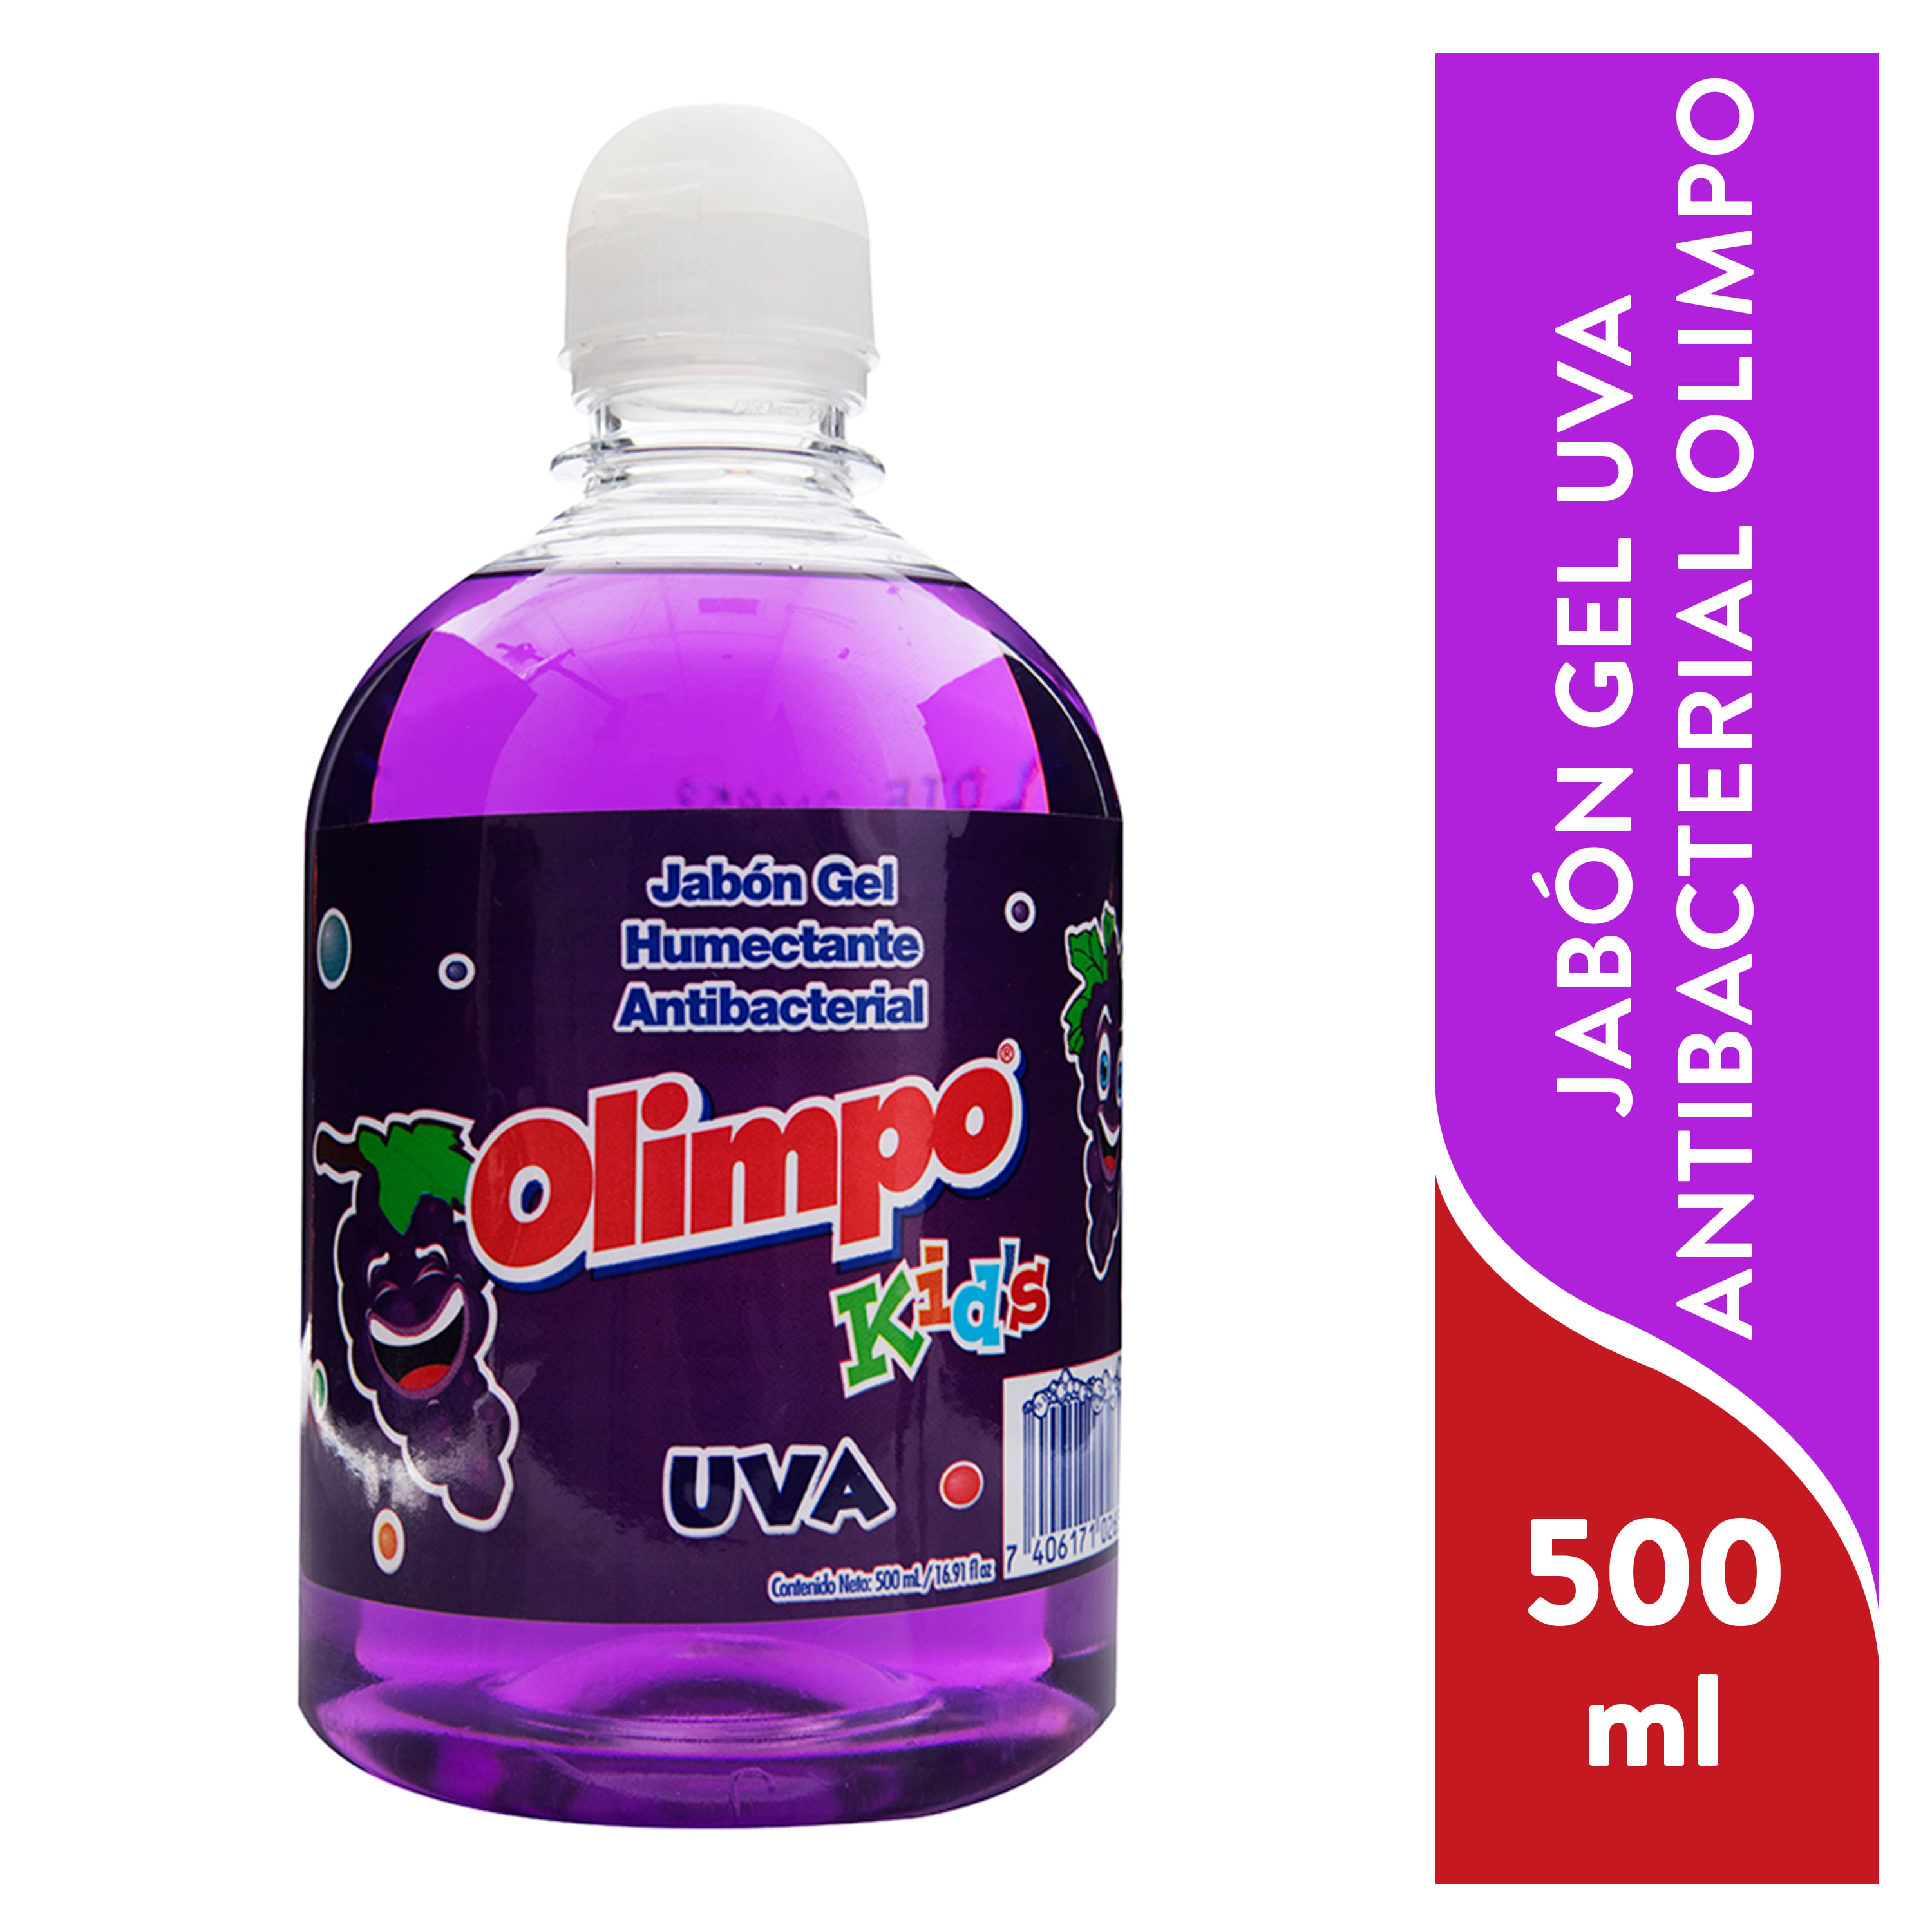 Jab-n-Liquido-Olimpo-Kids-Uva-500ml-1-32327